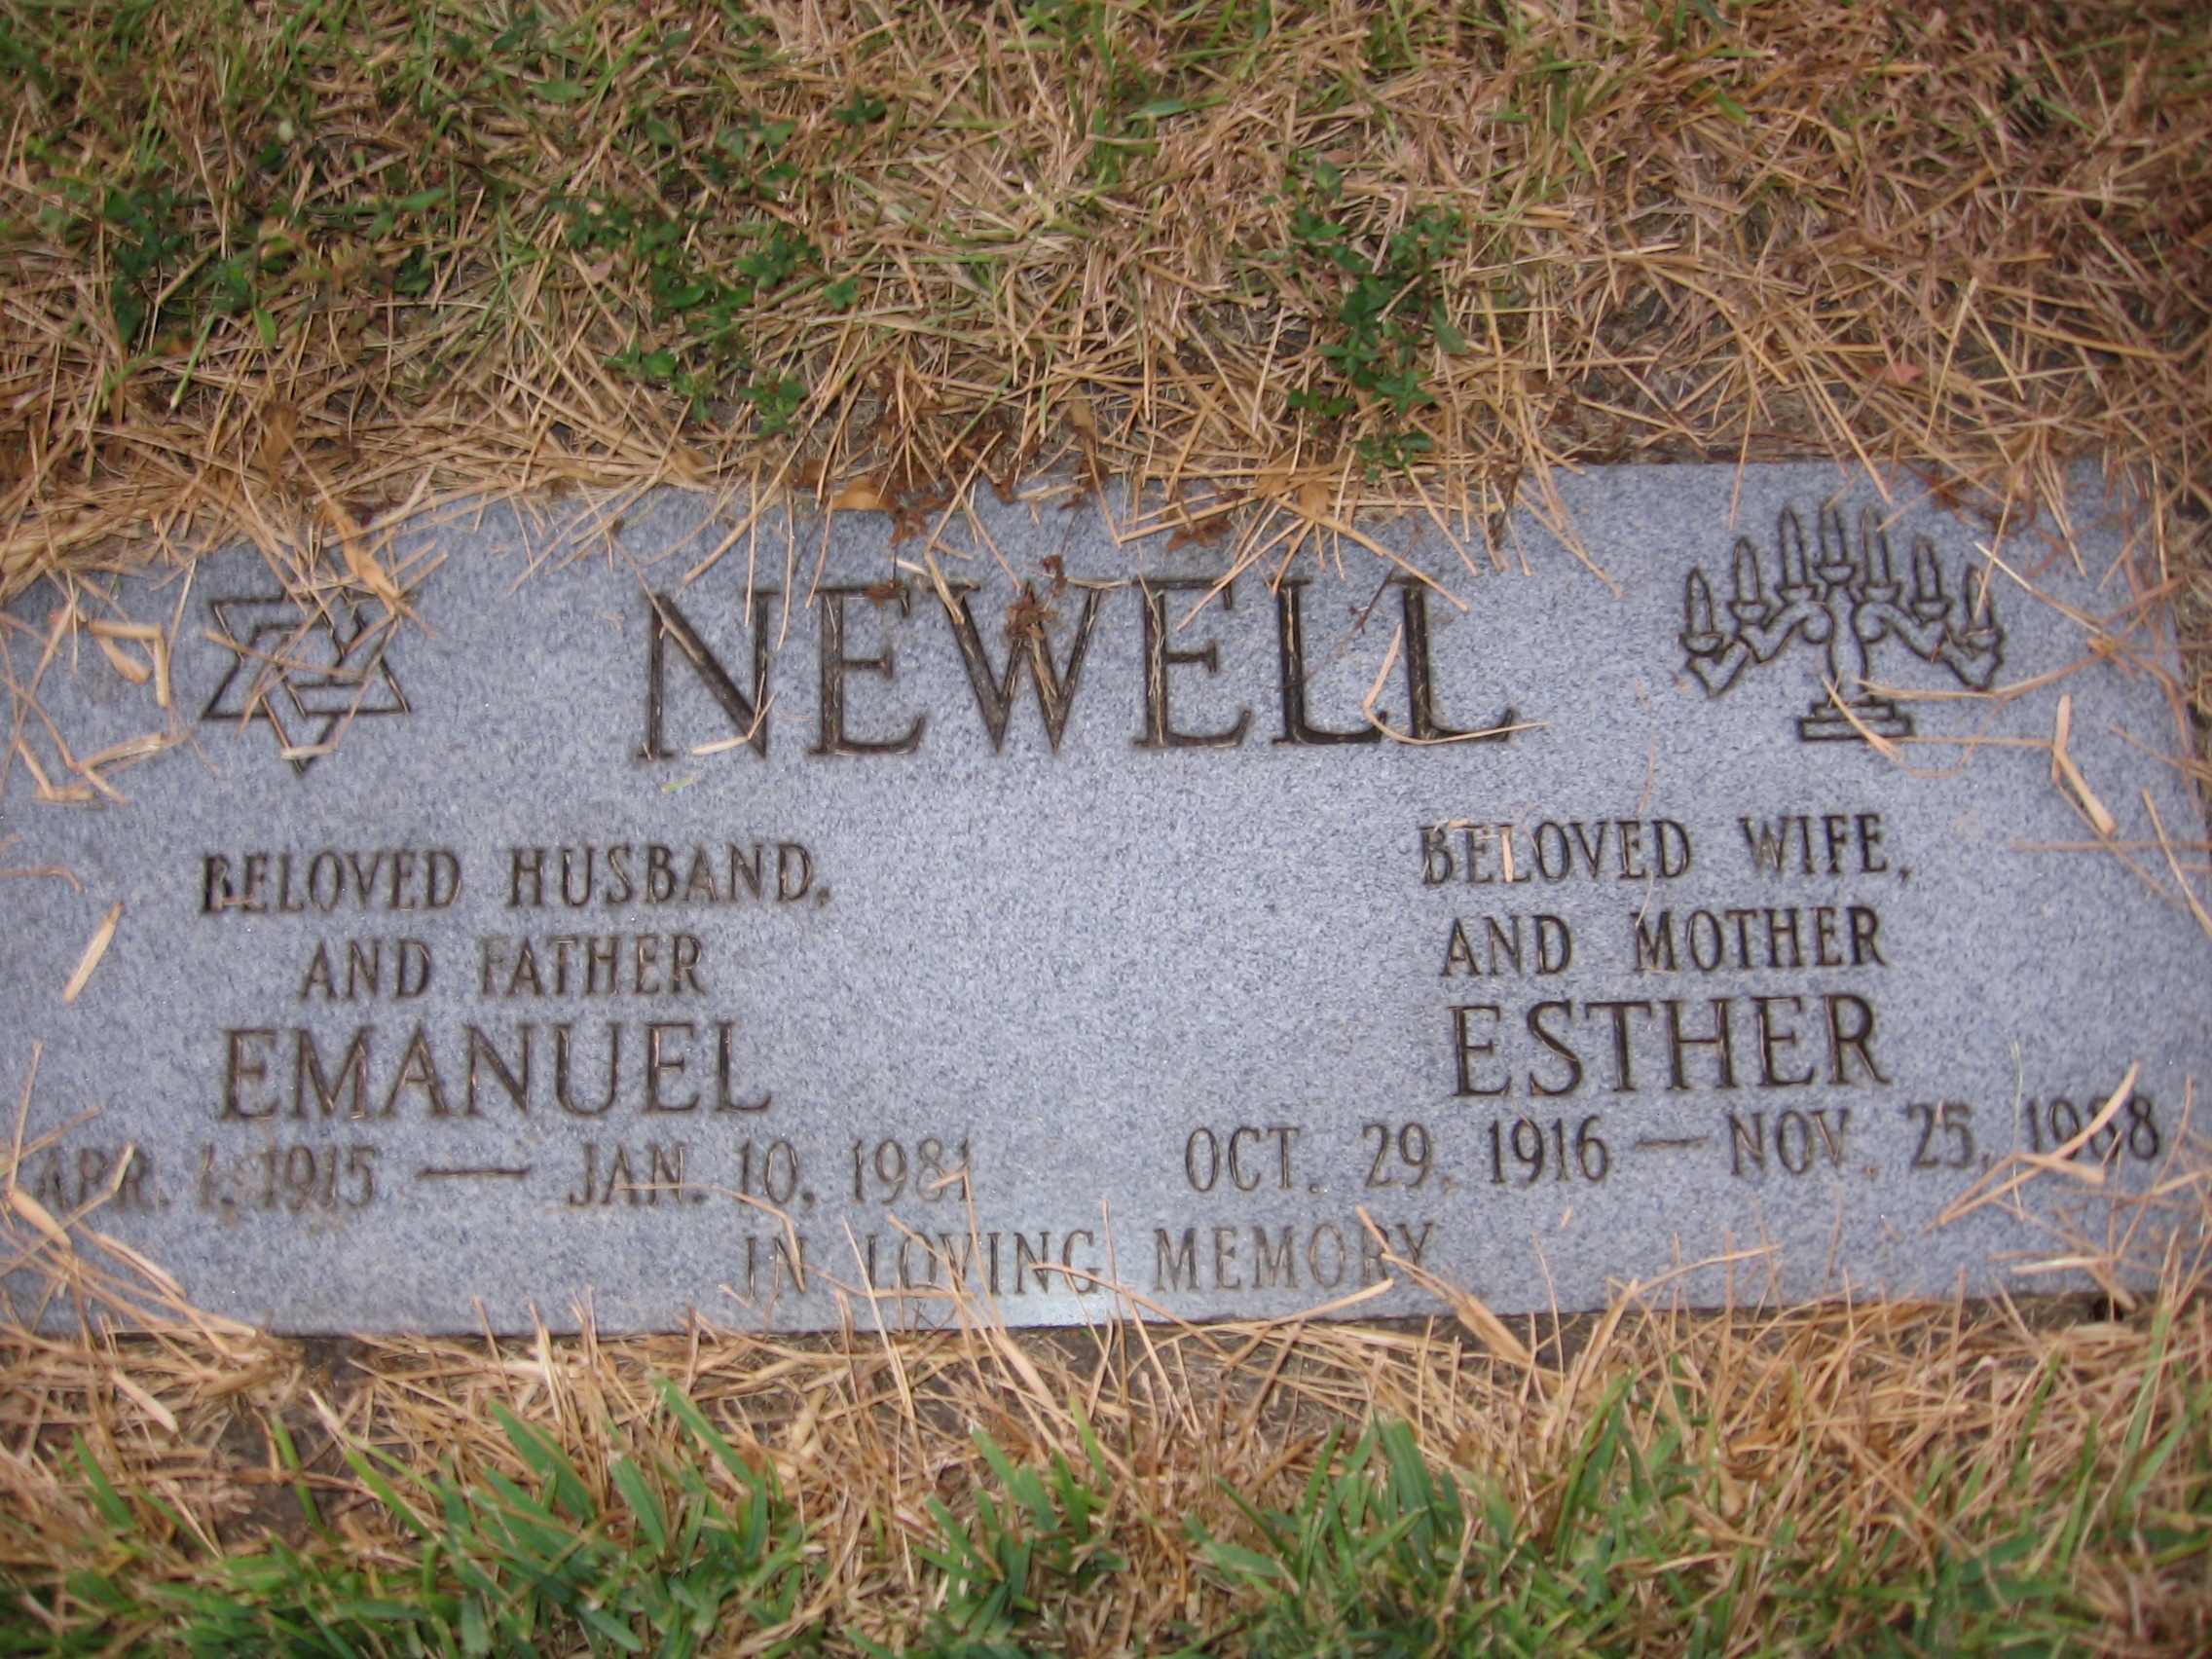 Emanuel Newell